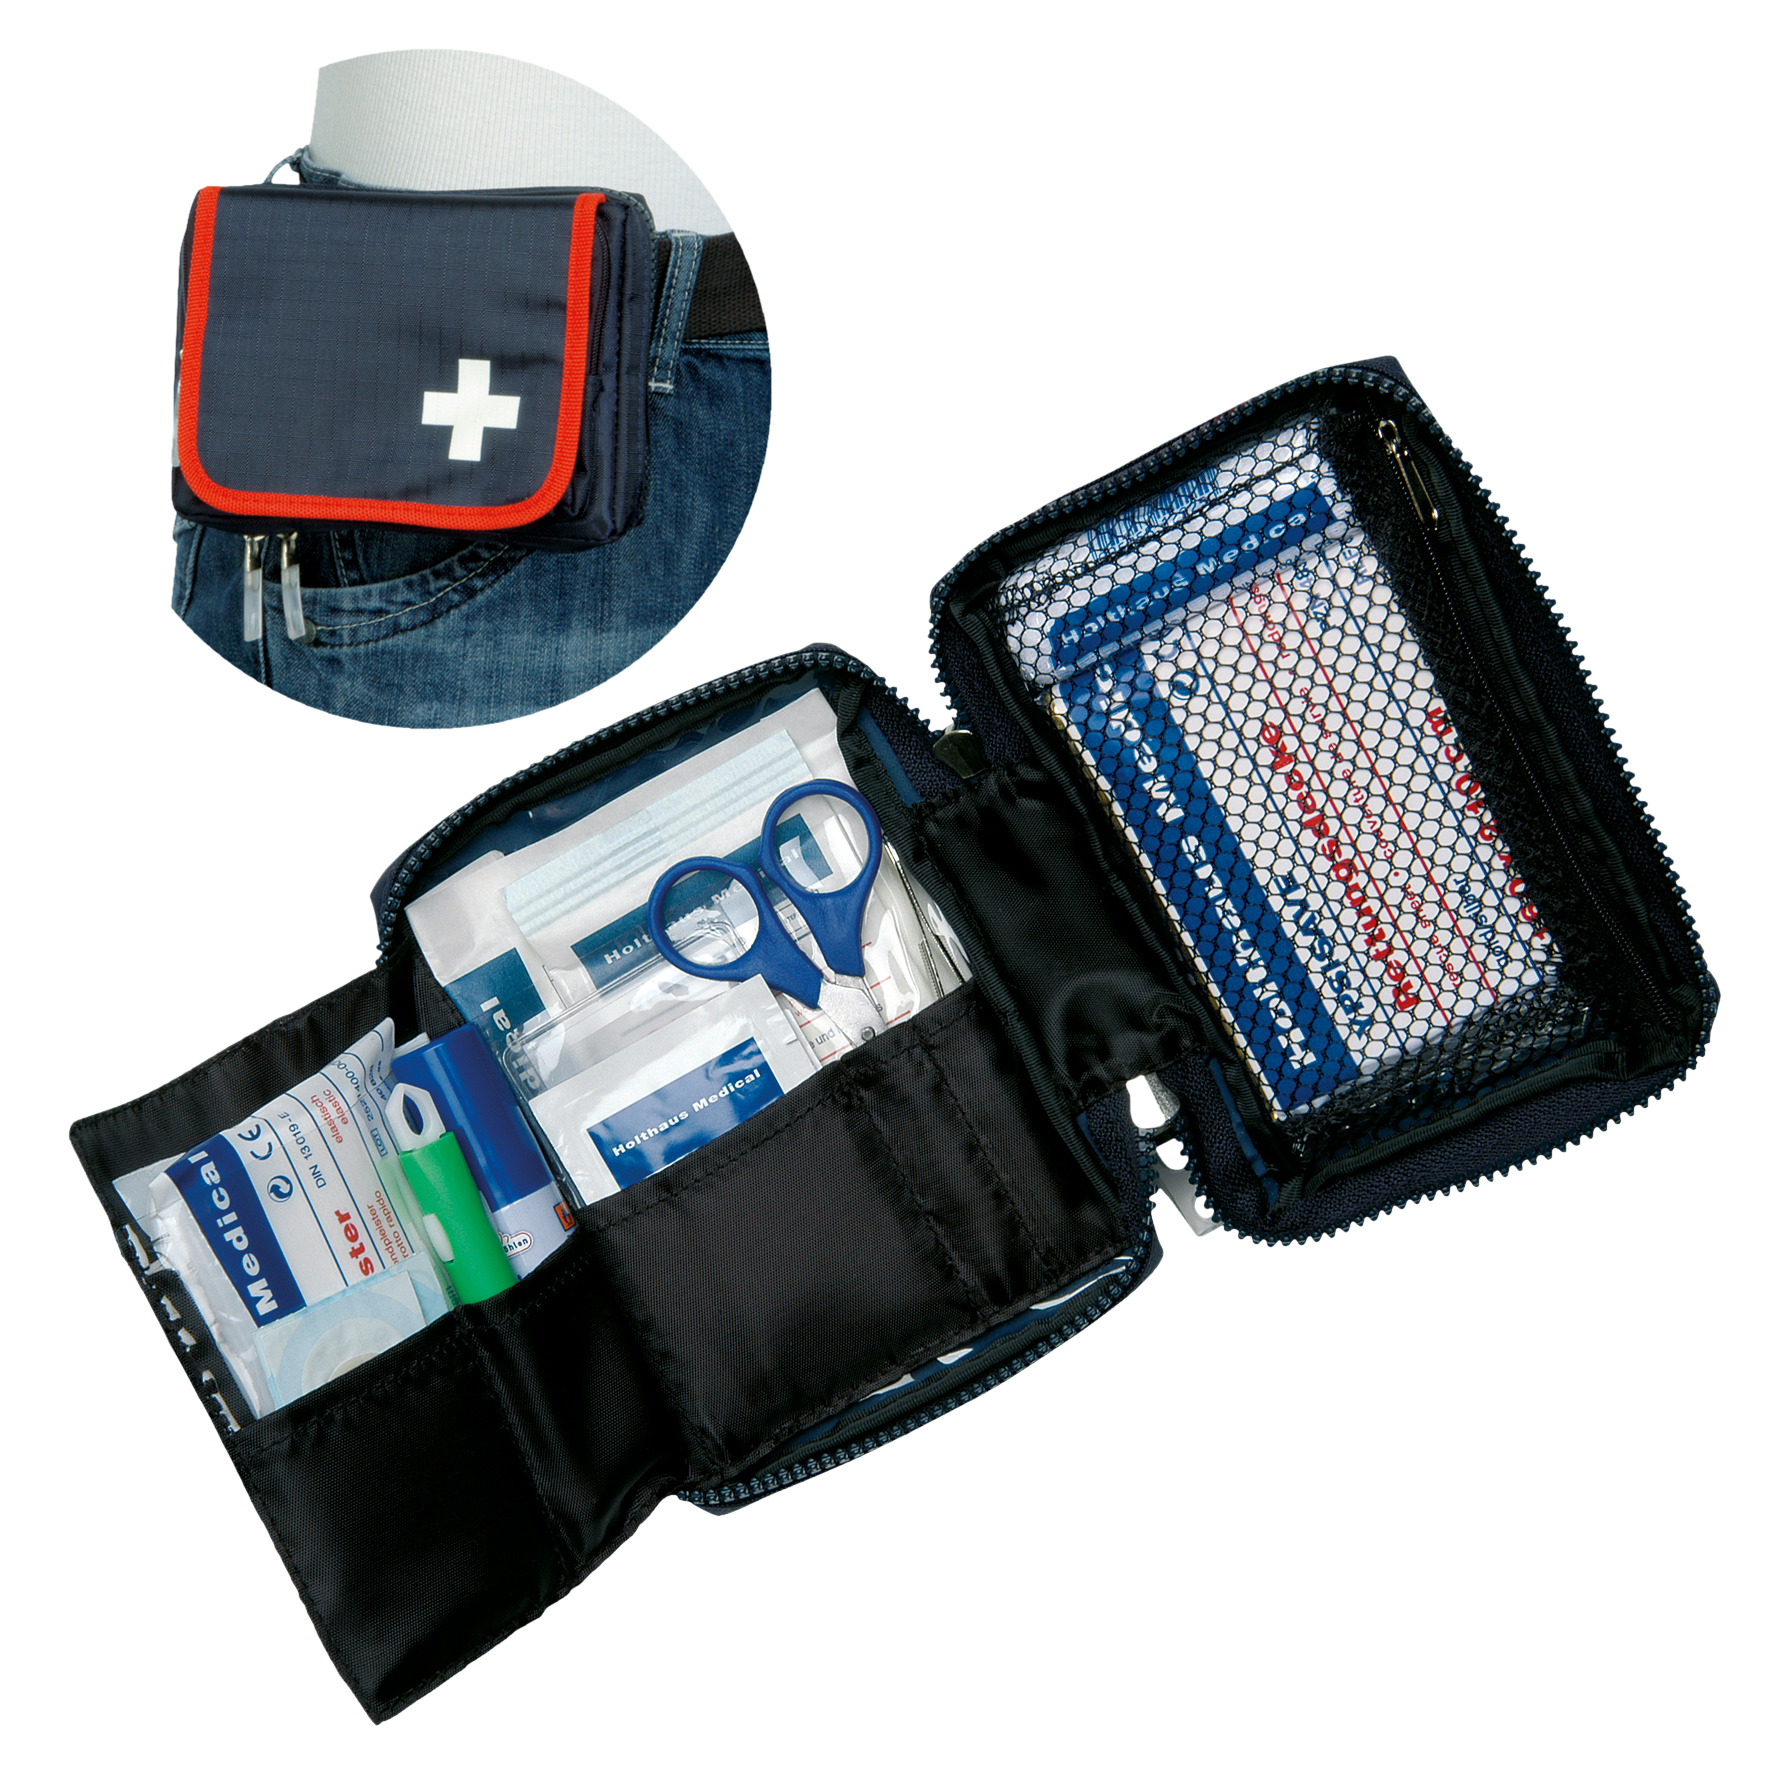 Erste Hilfe Notfall-Set Verbandtasche inkl. 27 Füllteilen, Taschen und  Rucksäcke, Rettungsdienst, Feuerwehr / Rettungsdienst